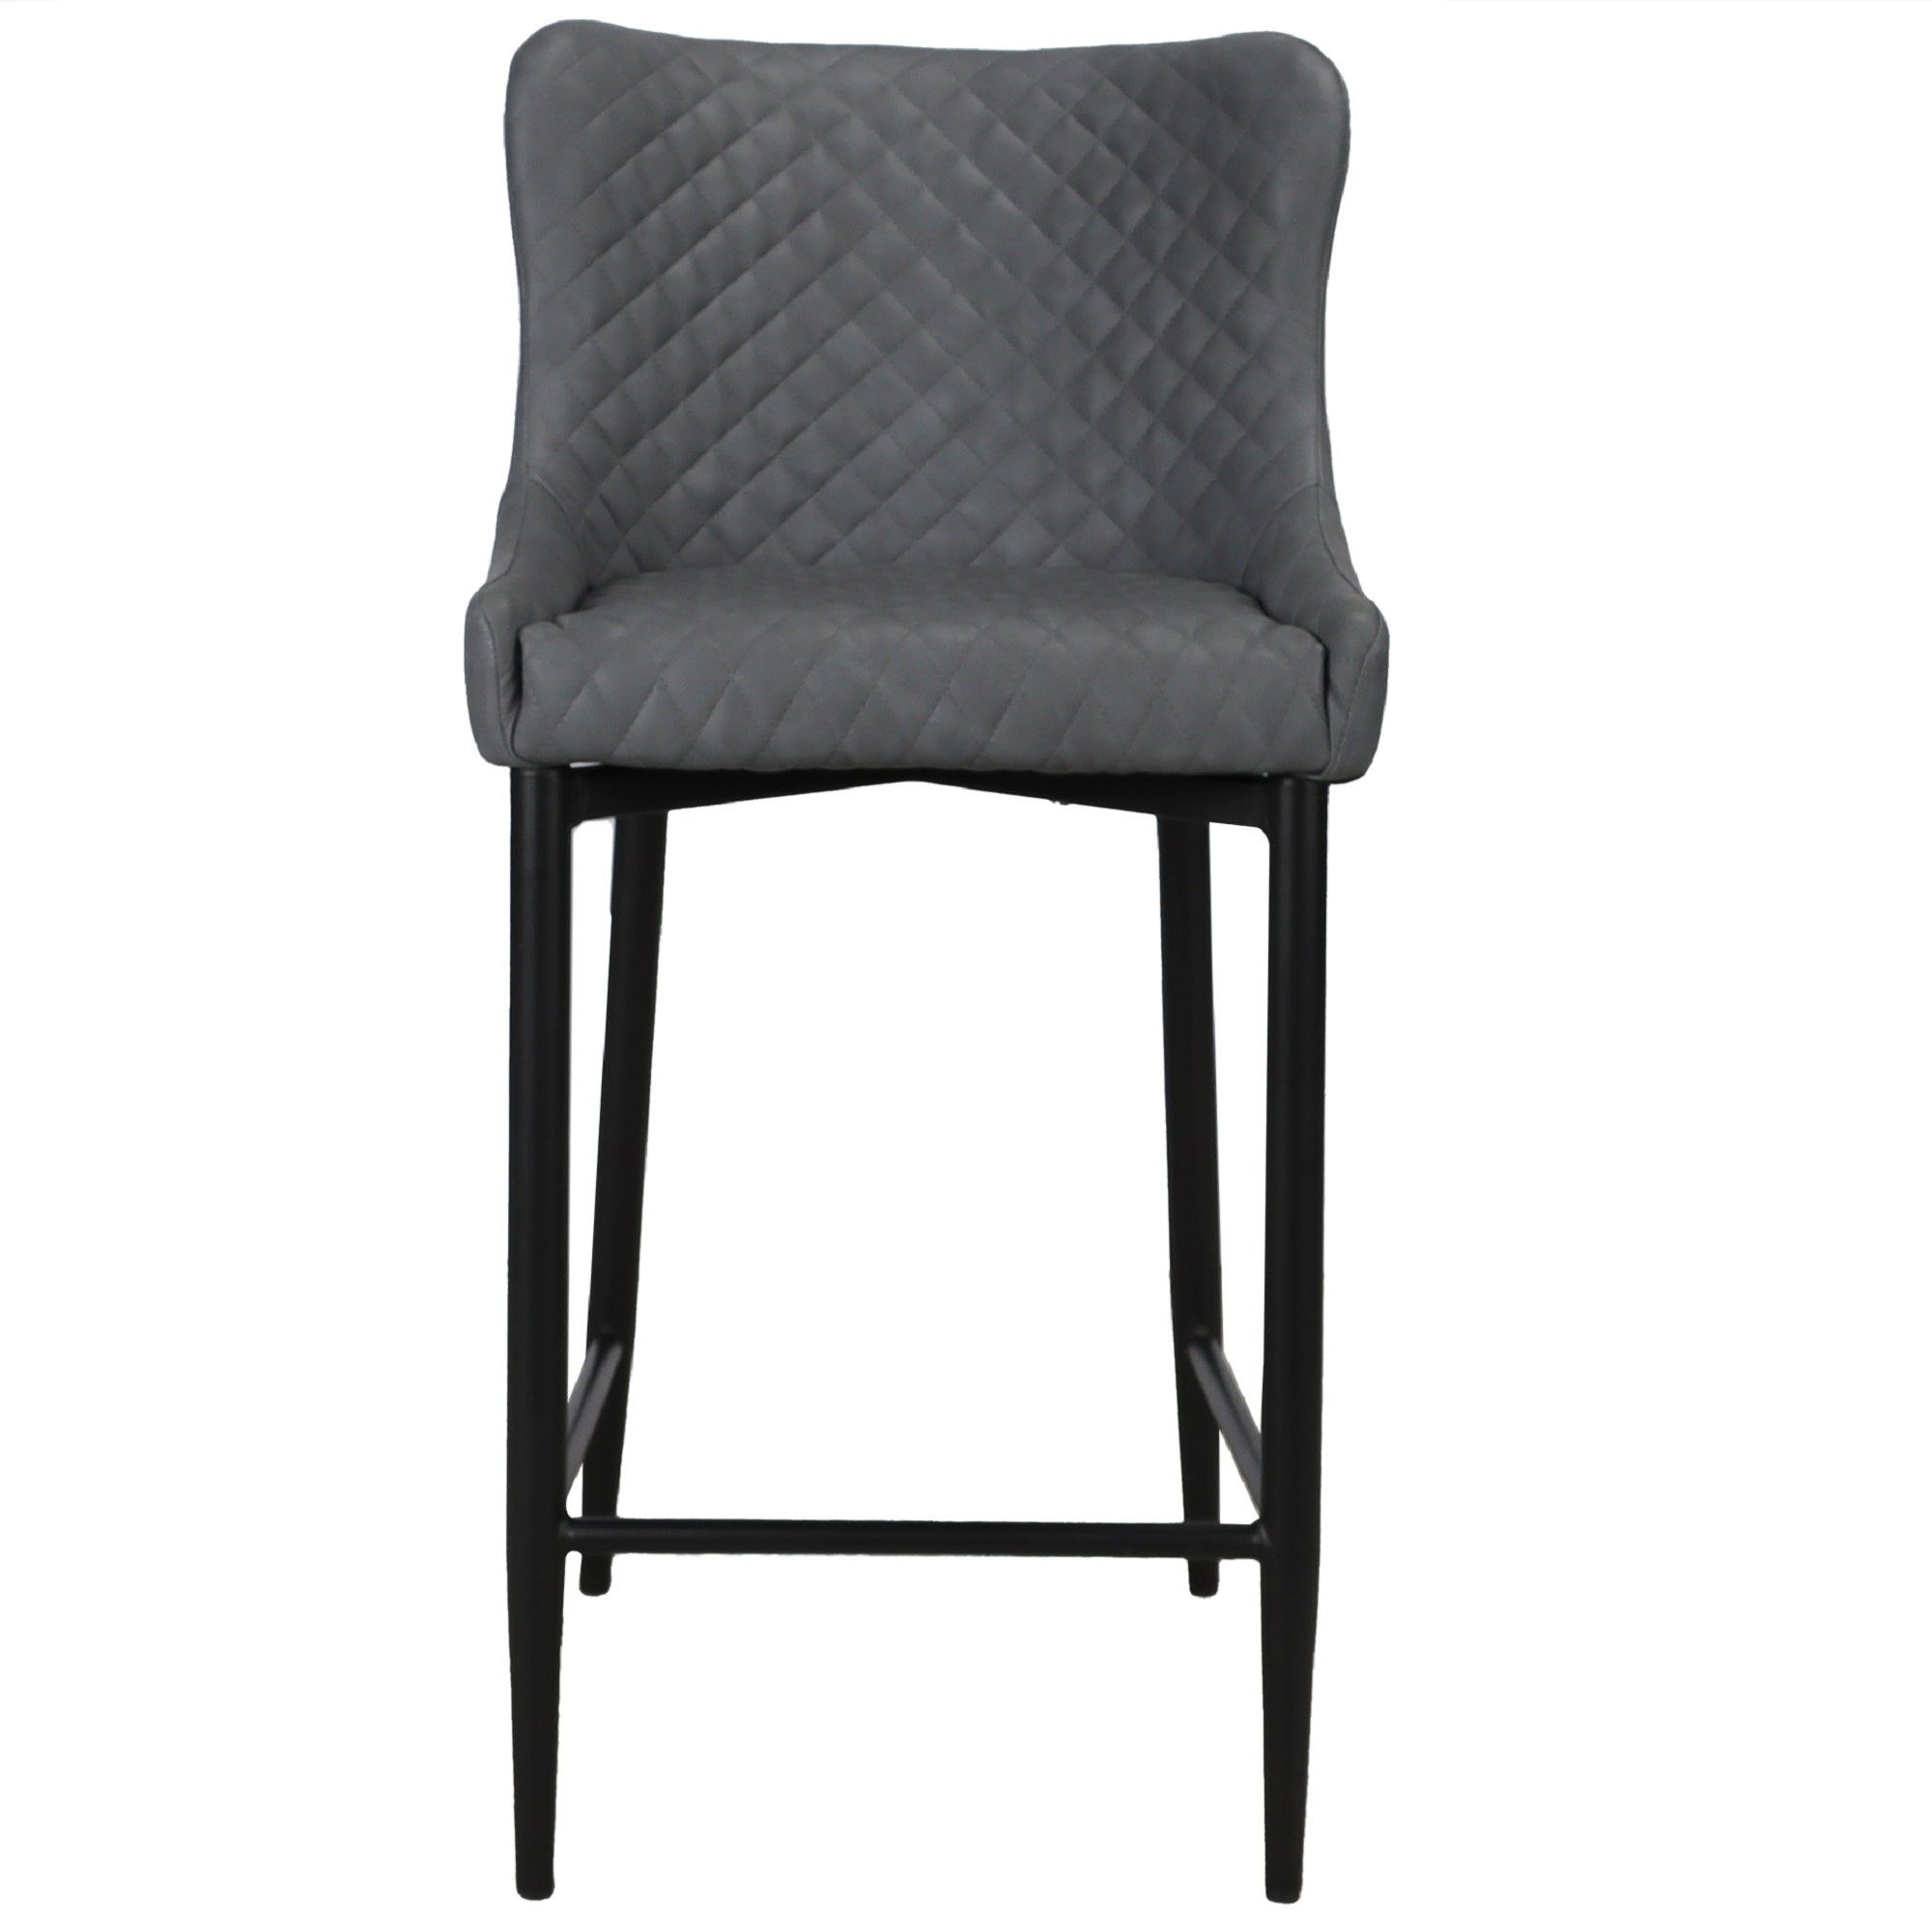 Ontario Counter Chair Grey